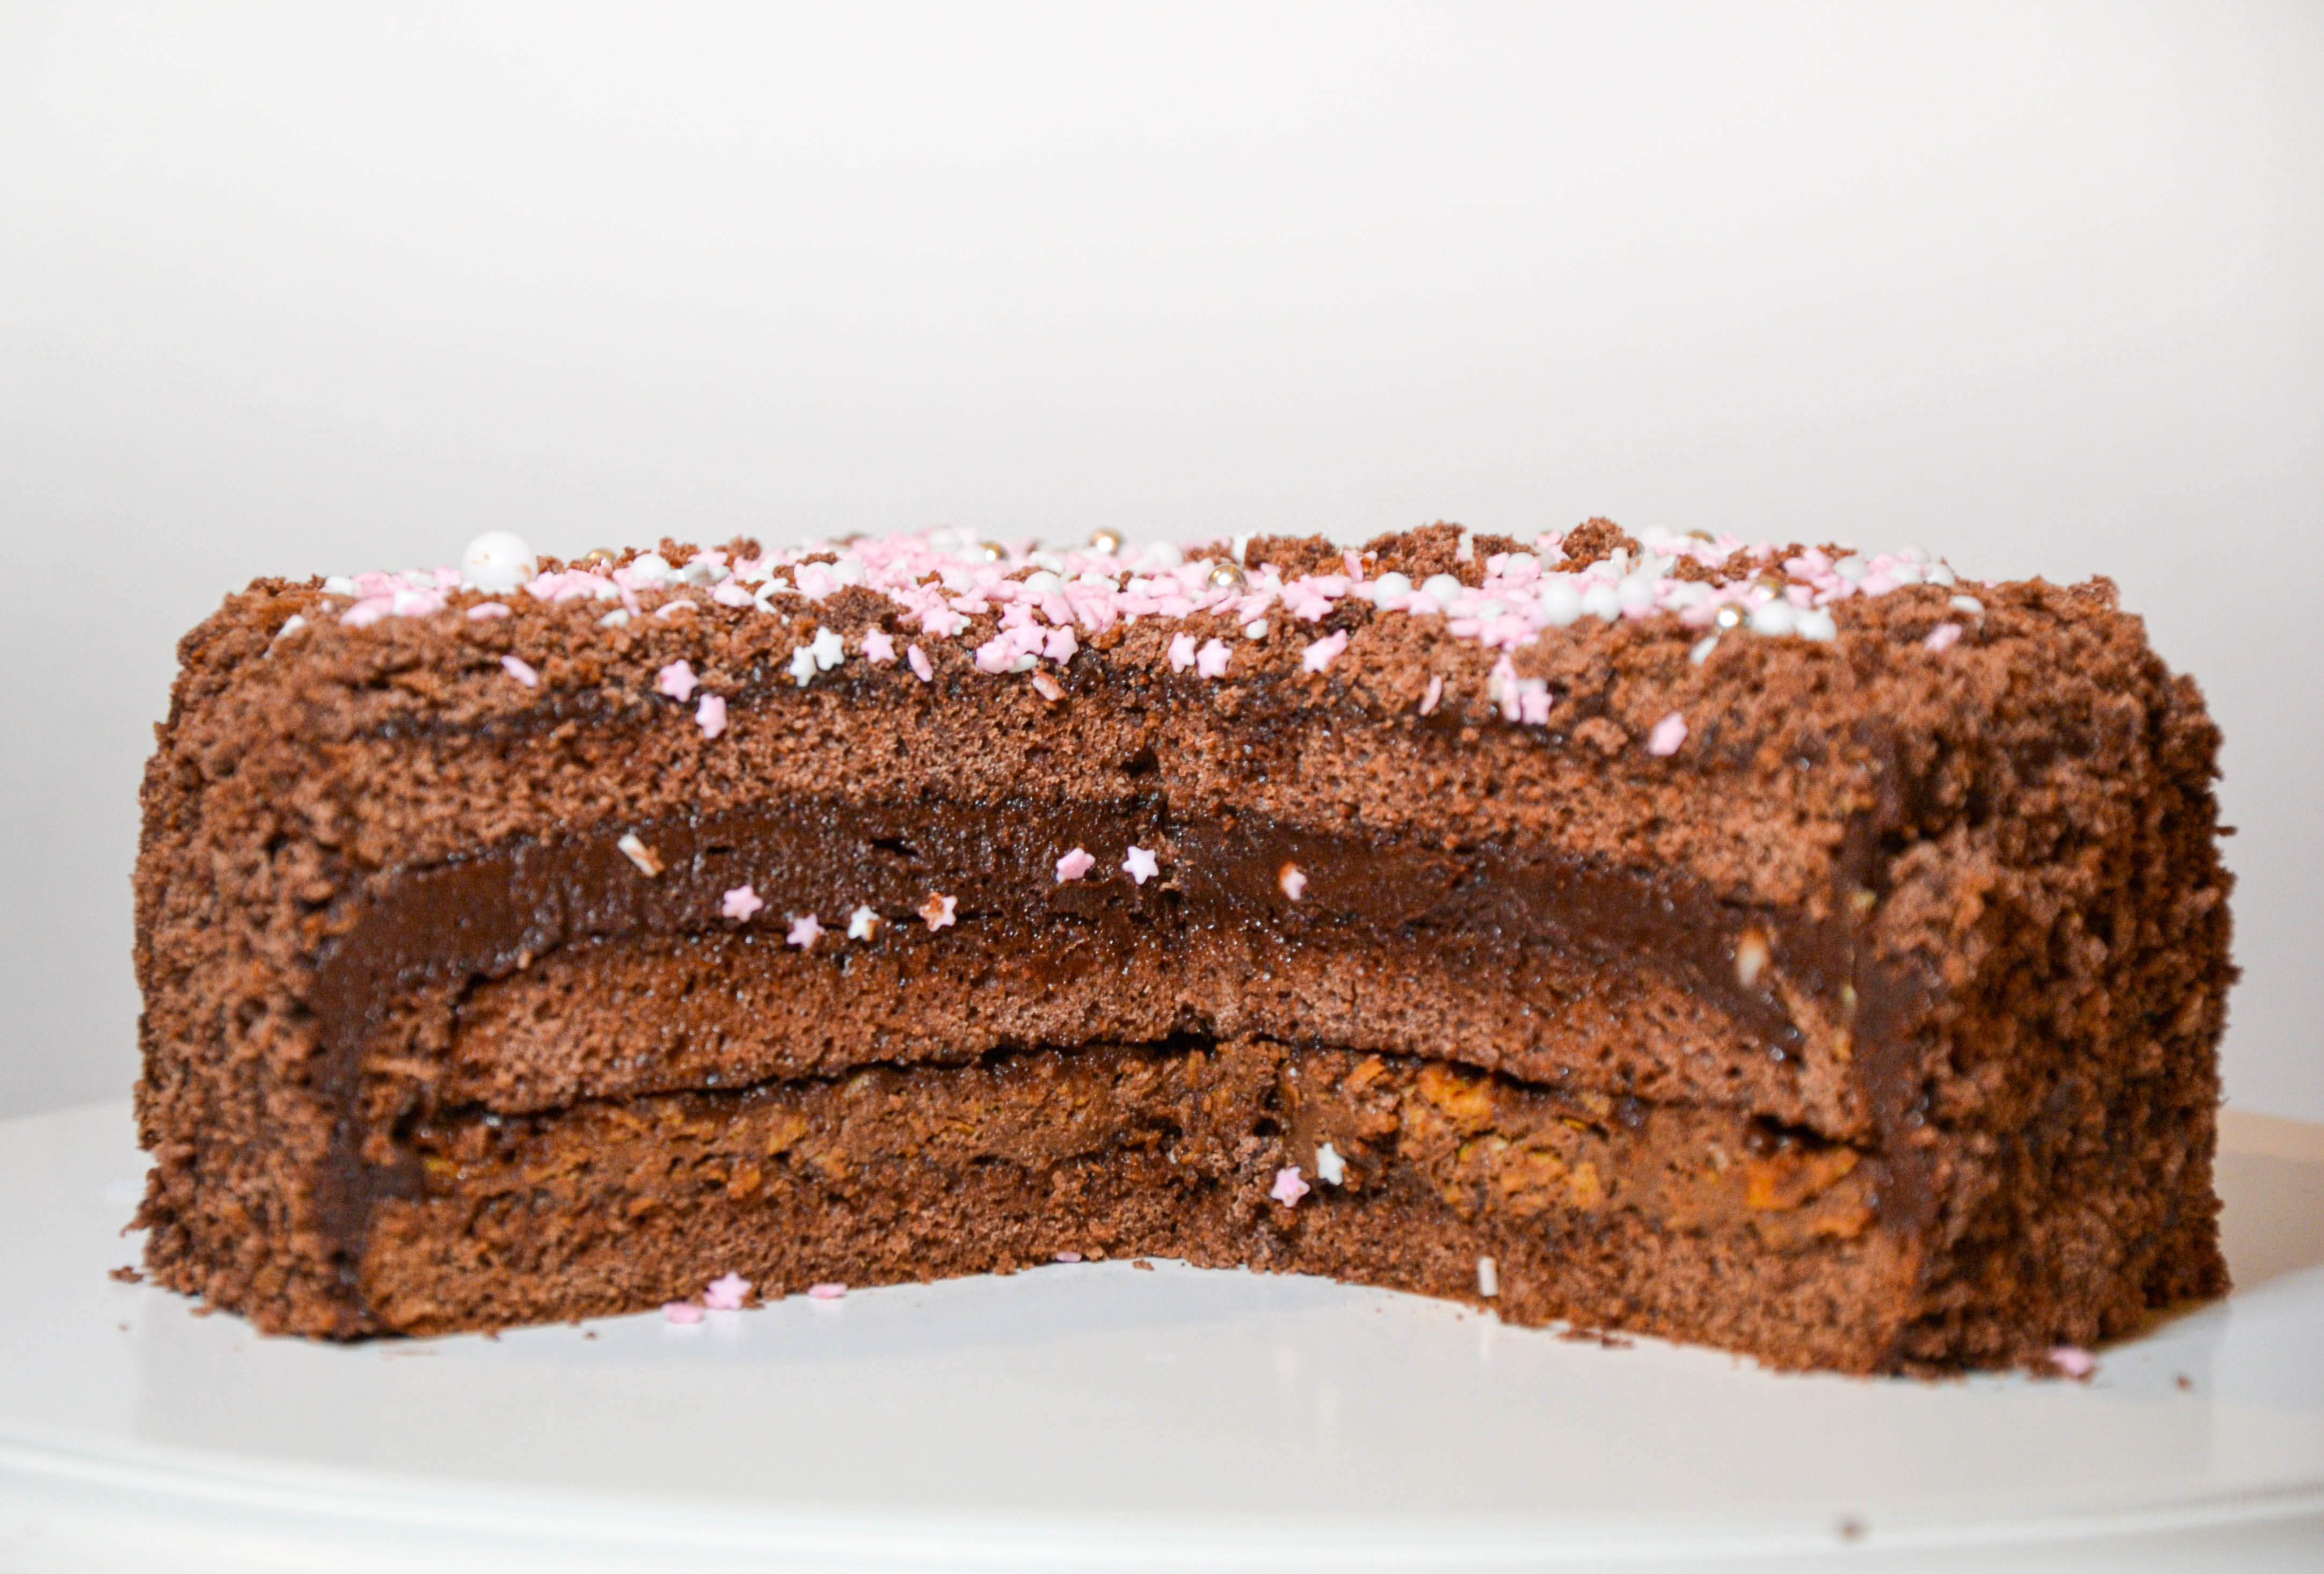 Šokoladinis biskvitinis tortas su traškučiu ir sviestiniu kremu